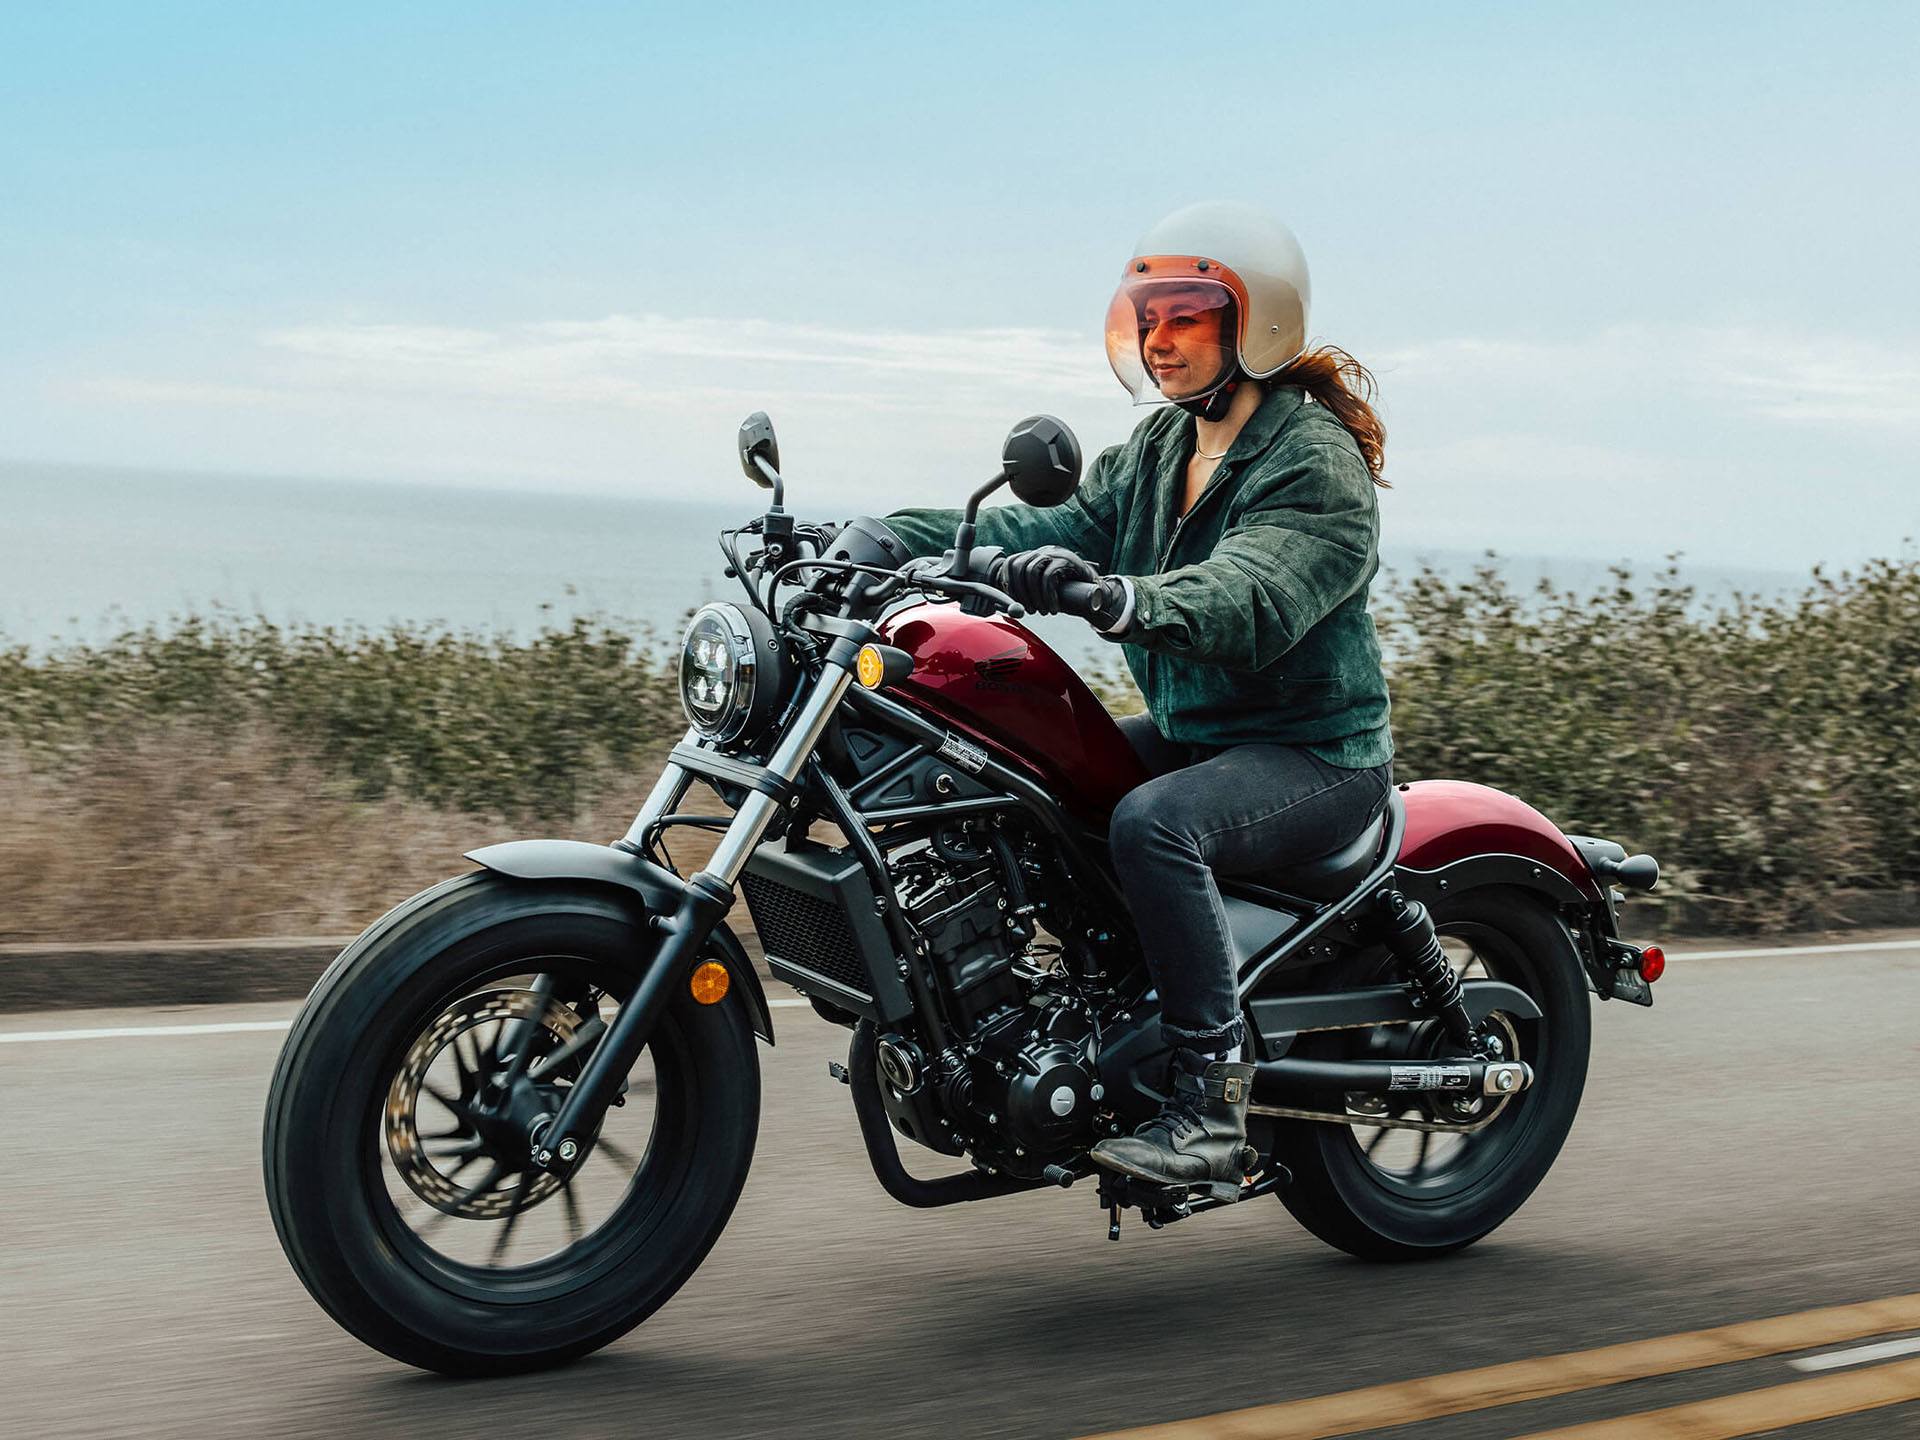 Honda Rebel 300 thế hệ mới đột phá thiết kế chiếm lĩnh phân khúc moto 300cc   MuasamXecom